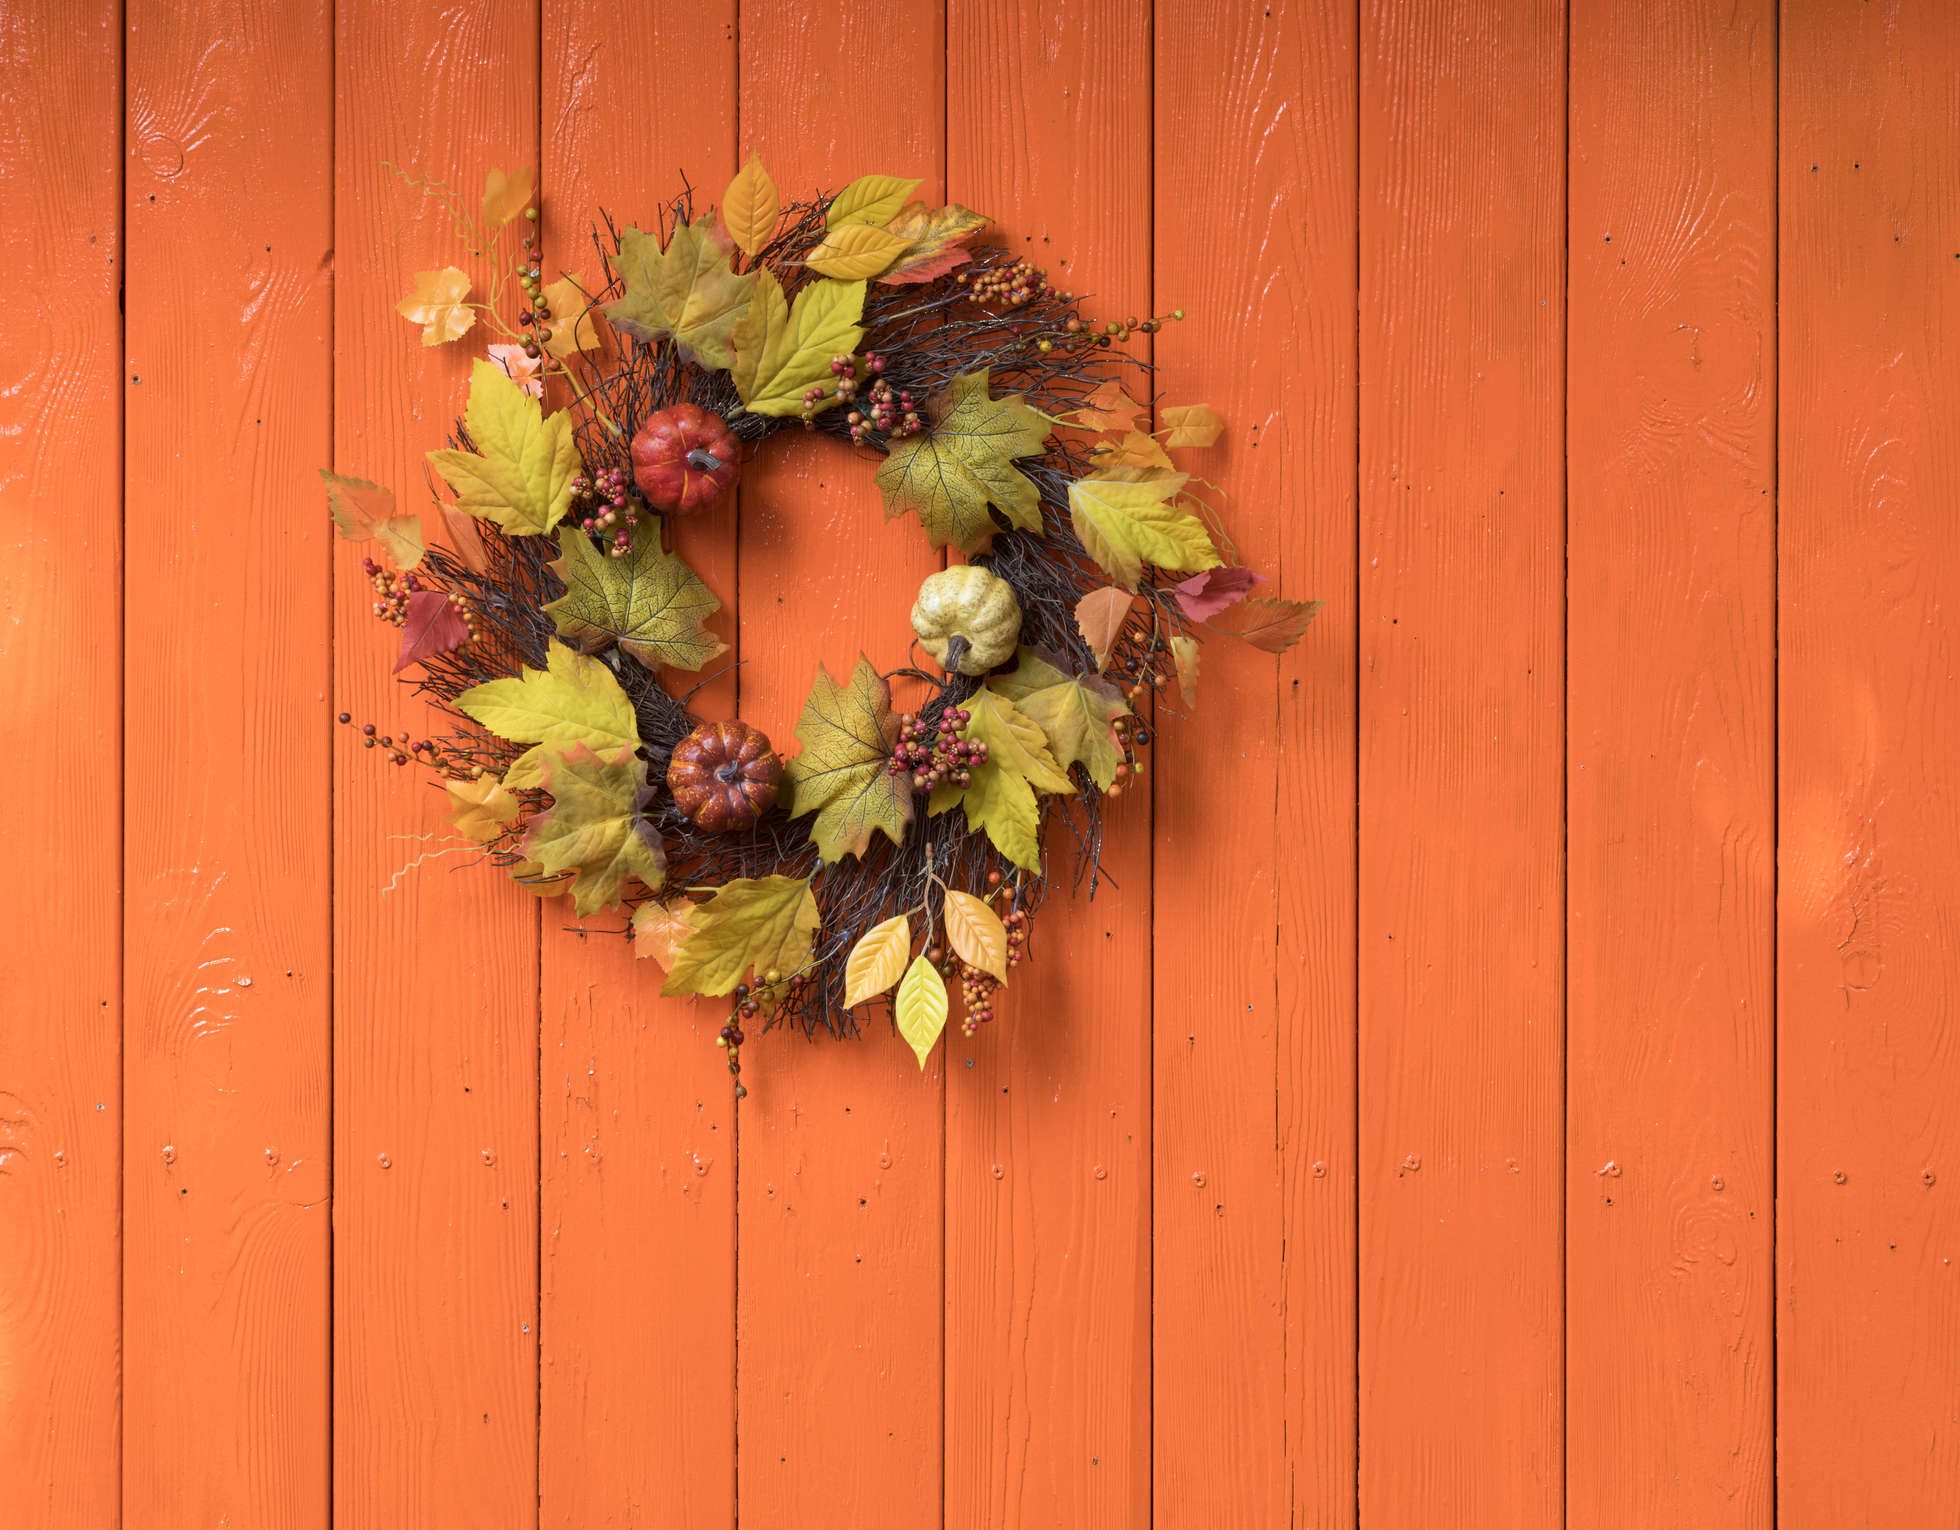 An autumn leaf wreath on a wooden fence